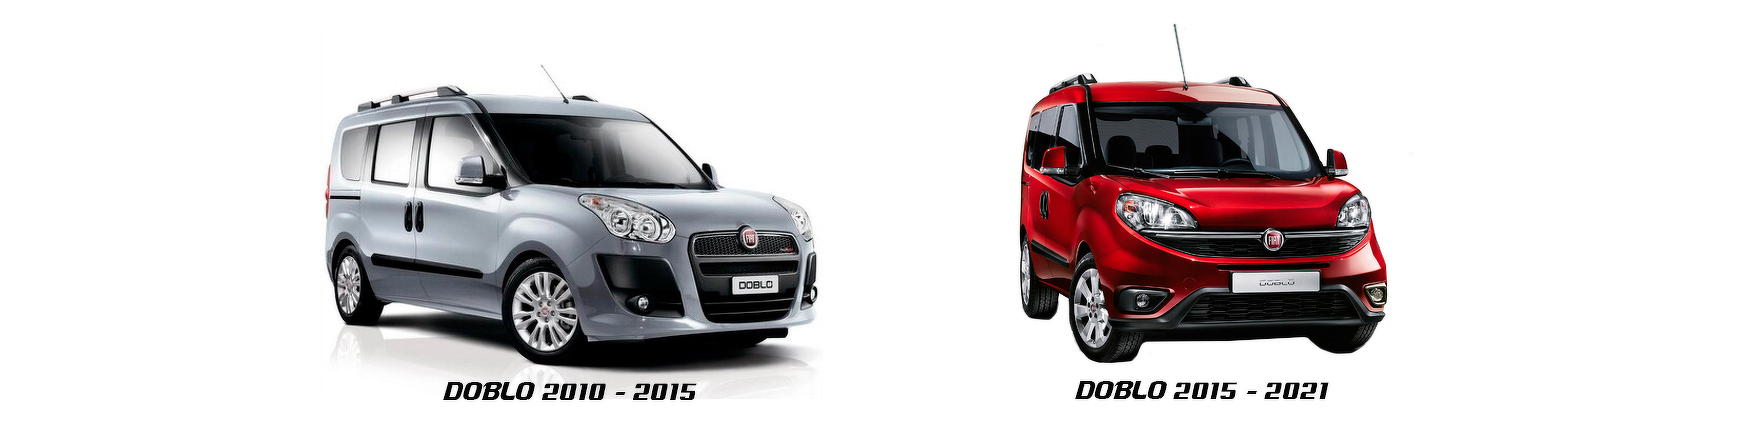 Piezas y Recambios de Fiat Doblo (263) de 2010 a 2015 | Veramauto.es